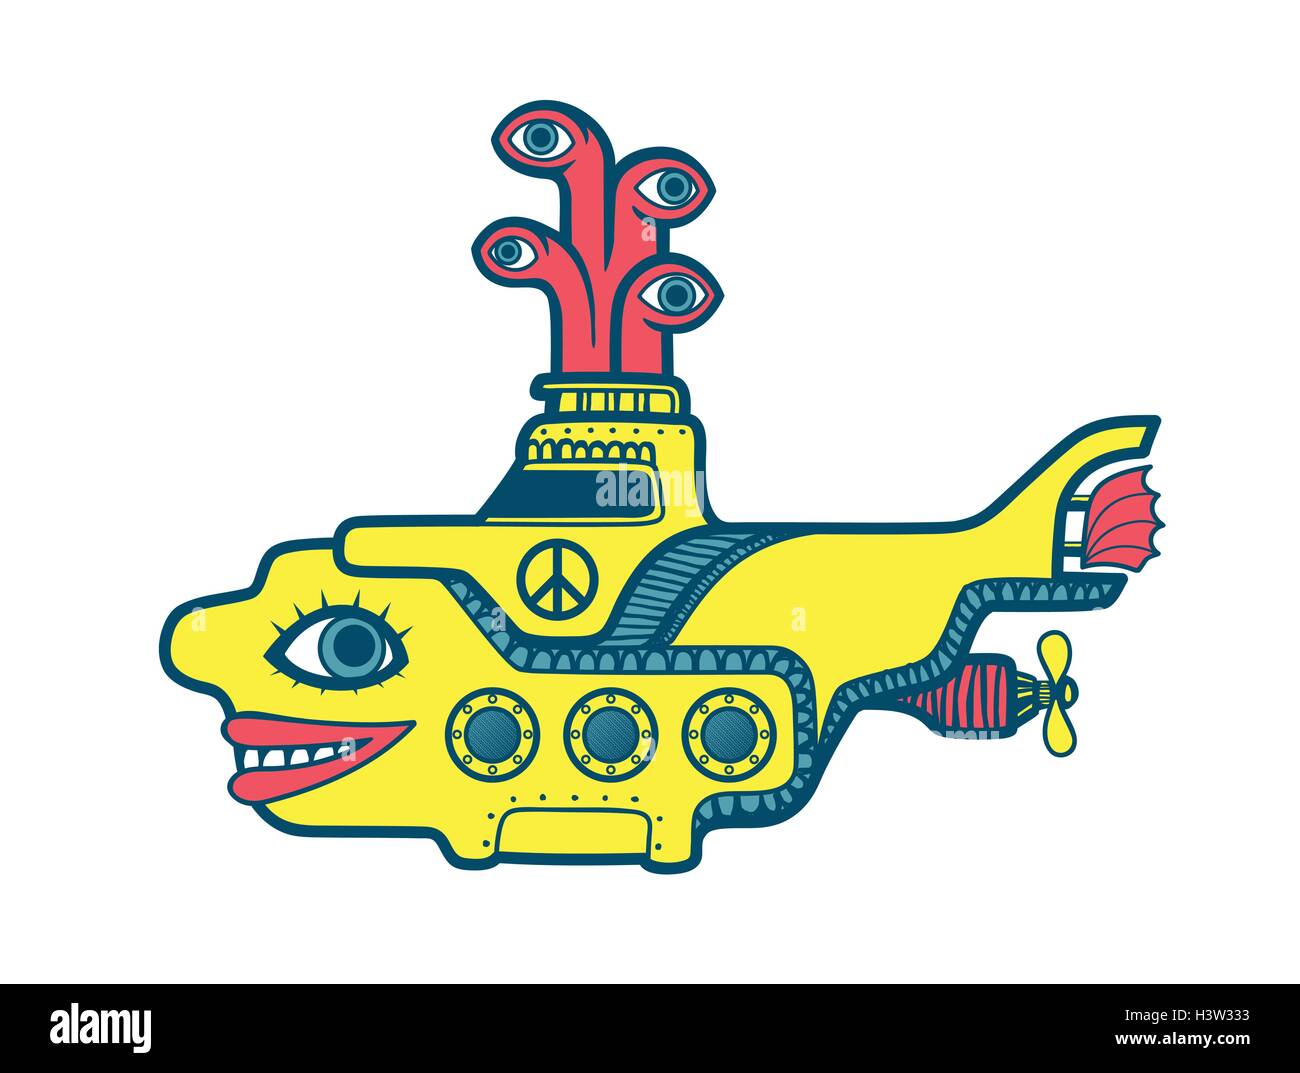 Gelben u-Boot Tauchen in die Tiefen des Meeres, der sechziger Jahre psychedelische Kunst Cartoon Illustration Stock Vektor